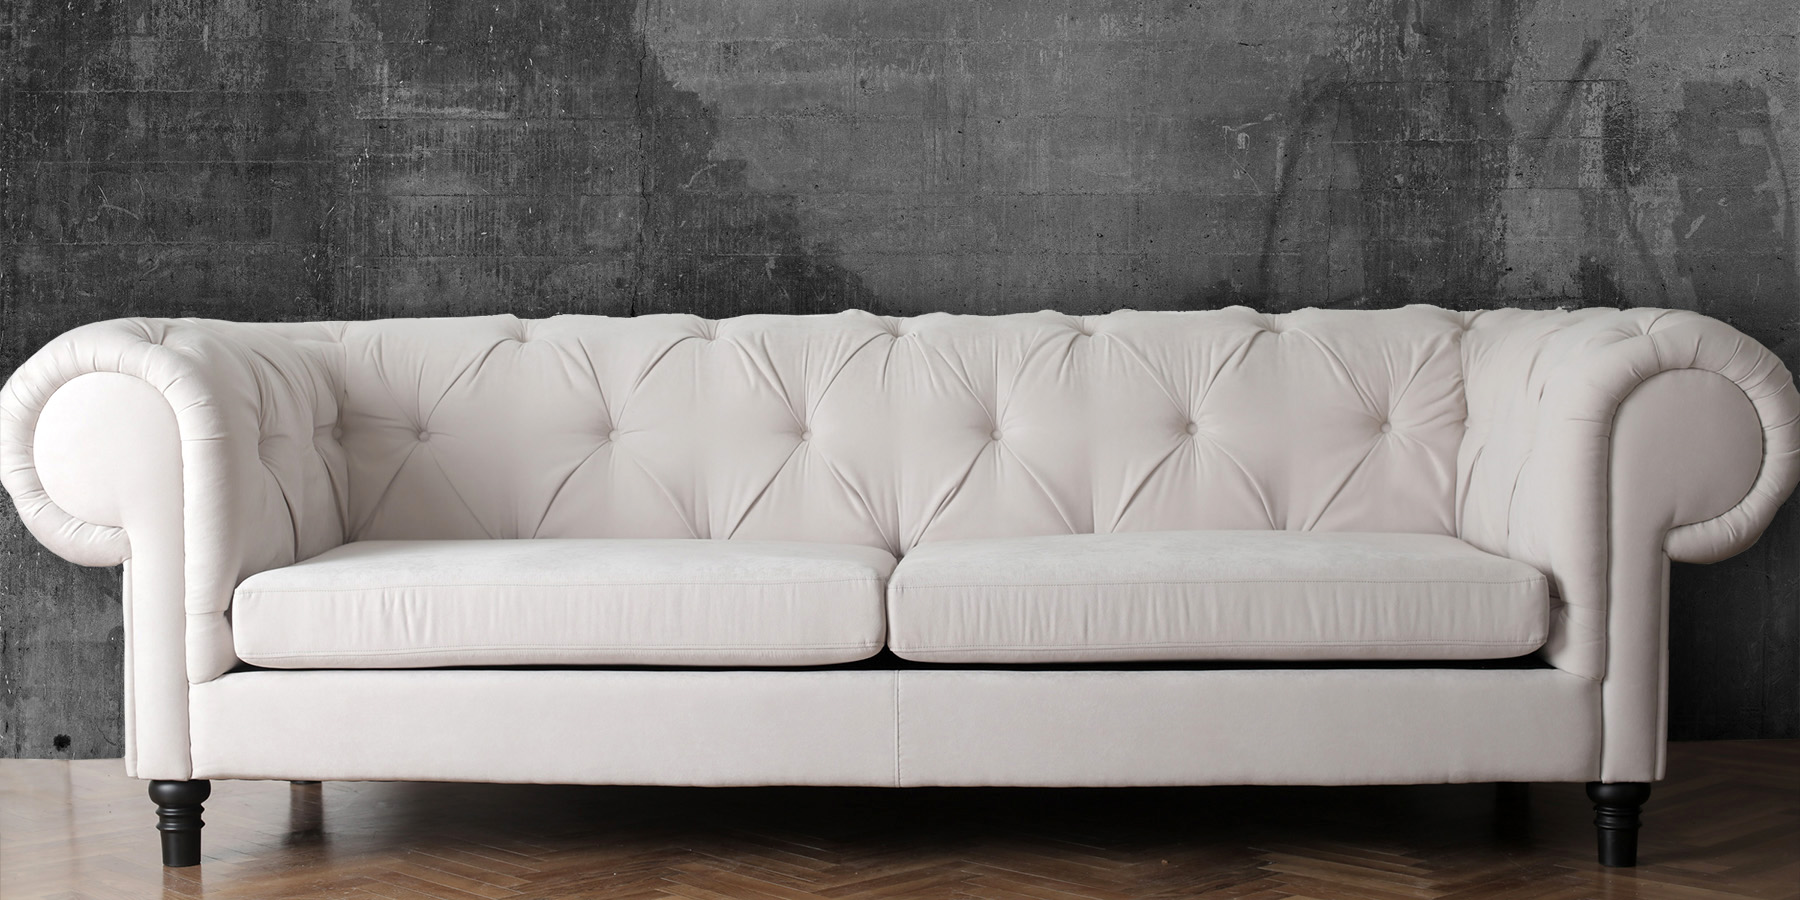 white sofa against a concrete wall 1